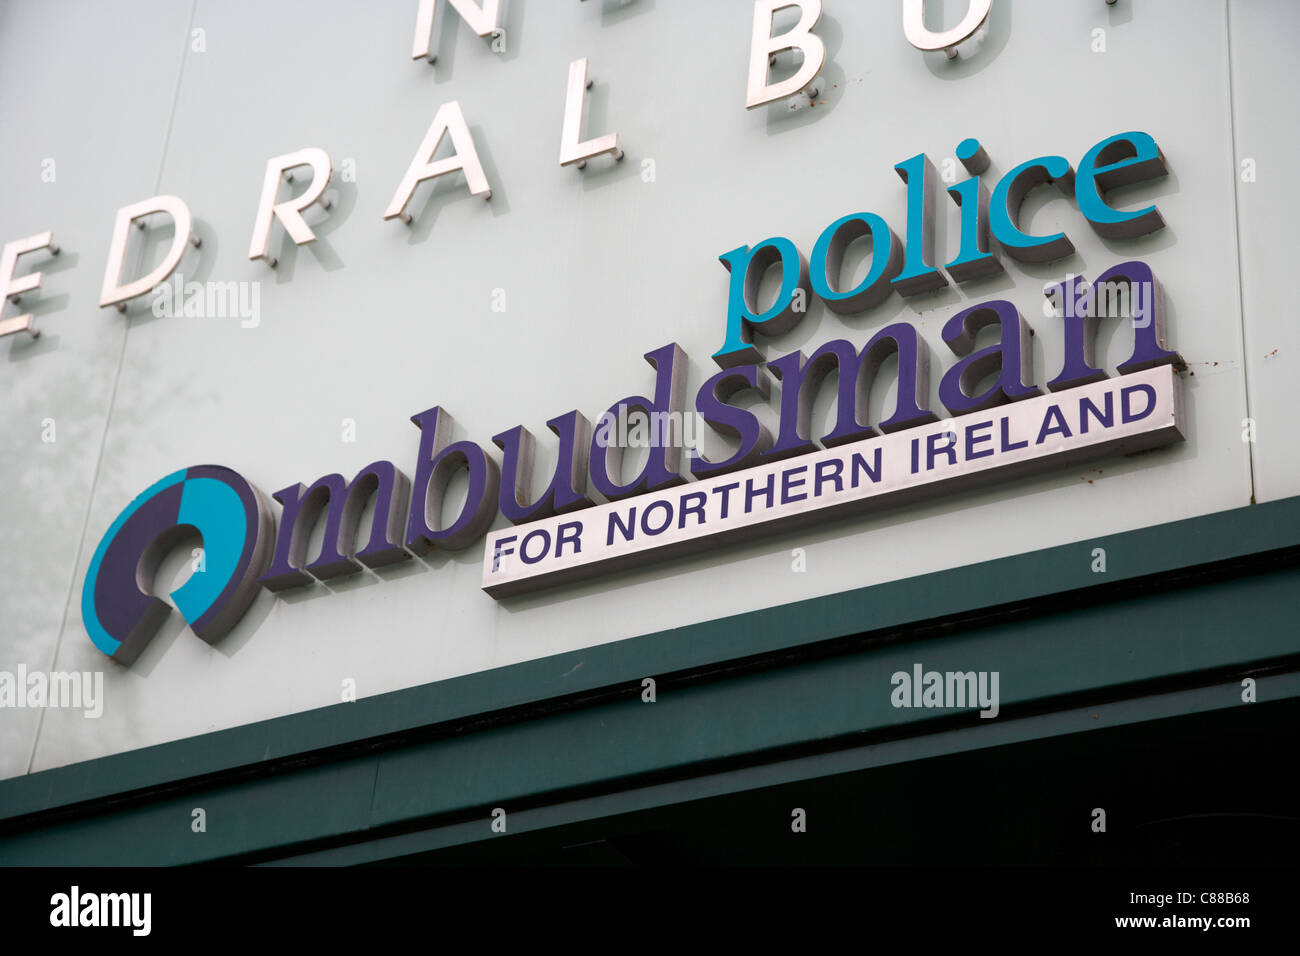 Mediatore europeo di polizia per Northern Ireland office belfast city centre Irlanda del Nord Regno Unito Foto Stock